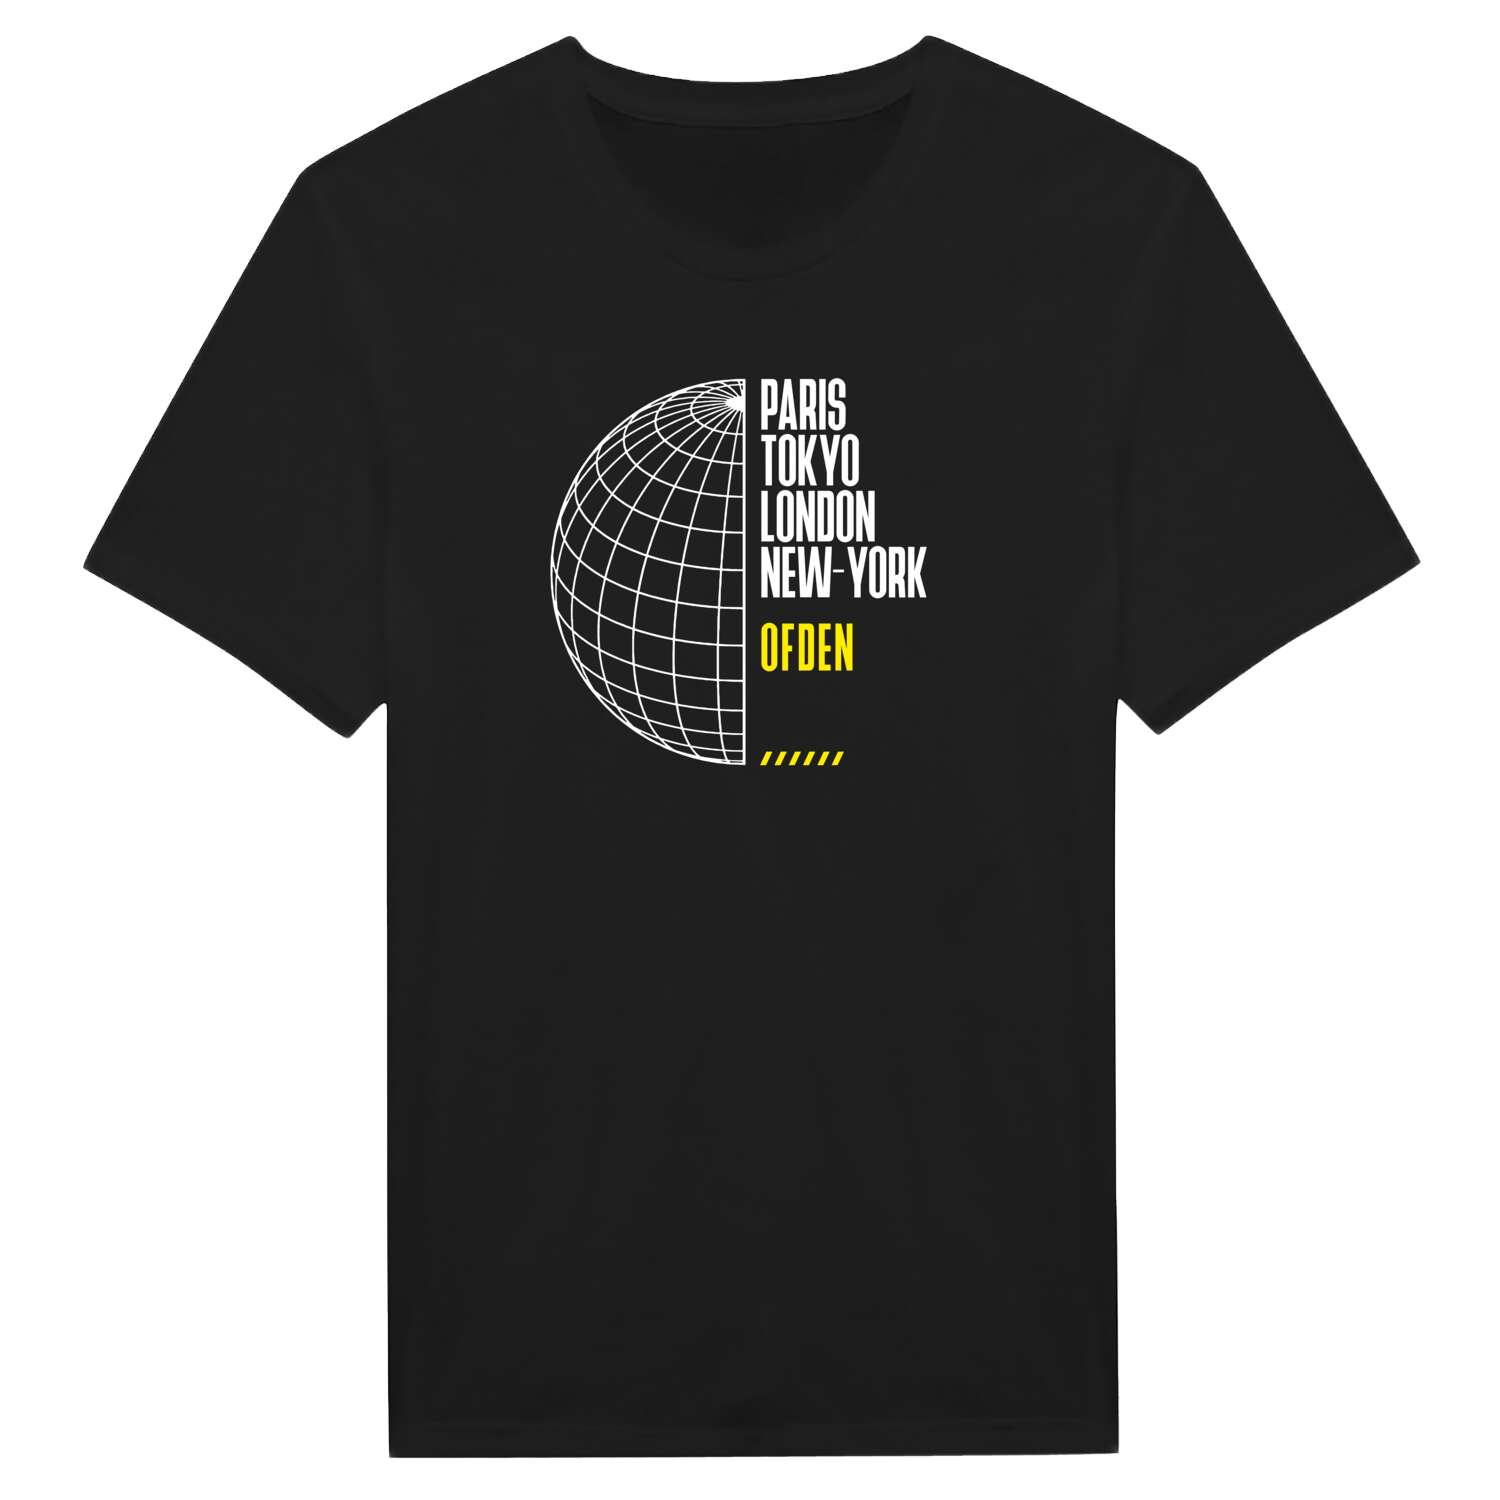 Ofden T-Shirt »Paris Tokyo London«